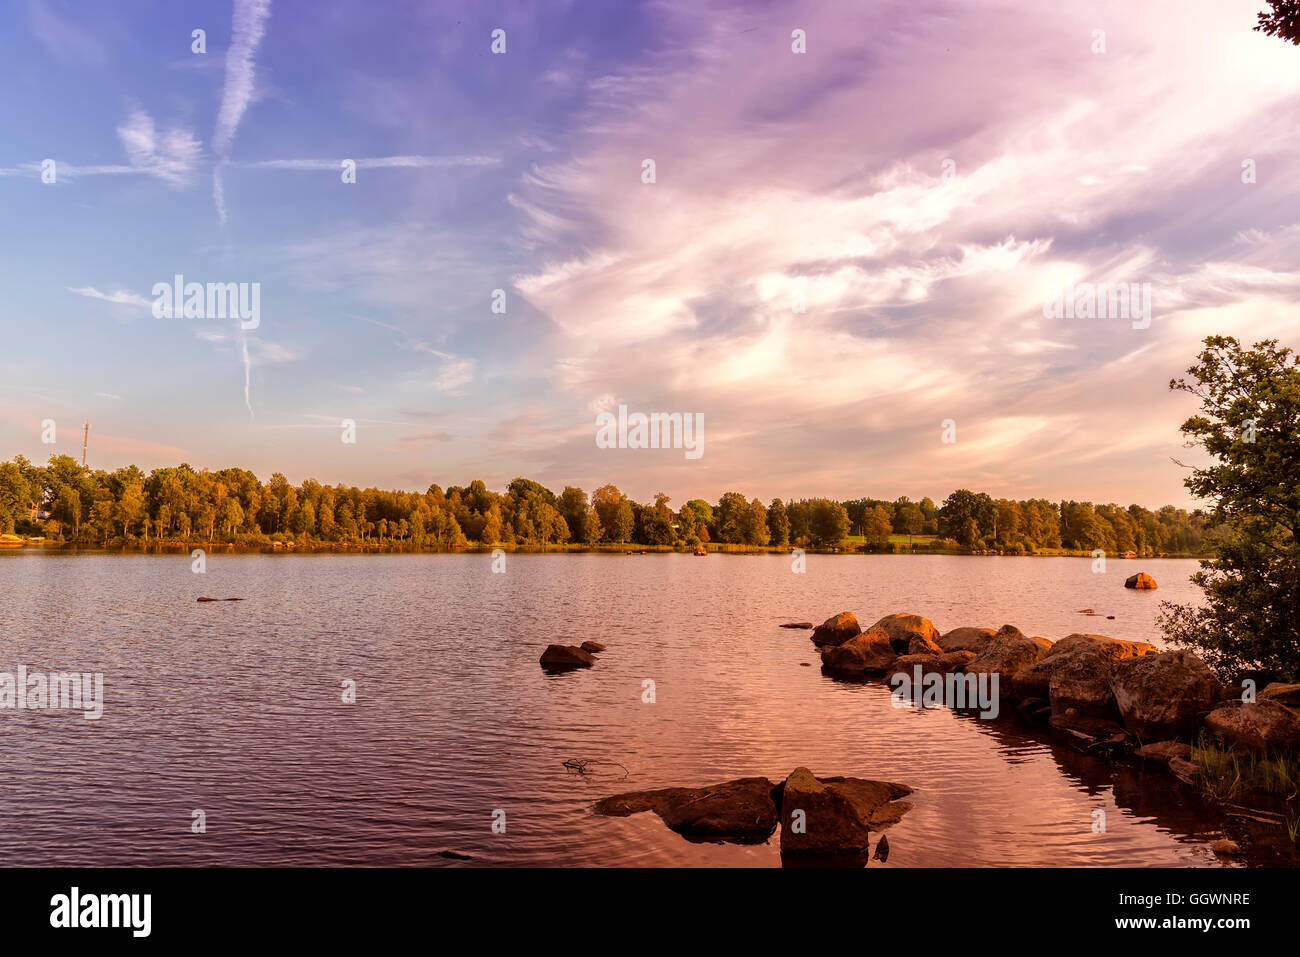 Ein landschaftlich schönes Bild von einem schwedischen See im Sommer. Stockfoto